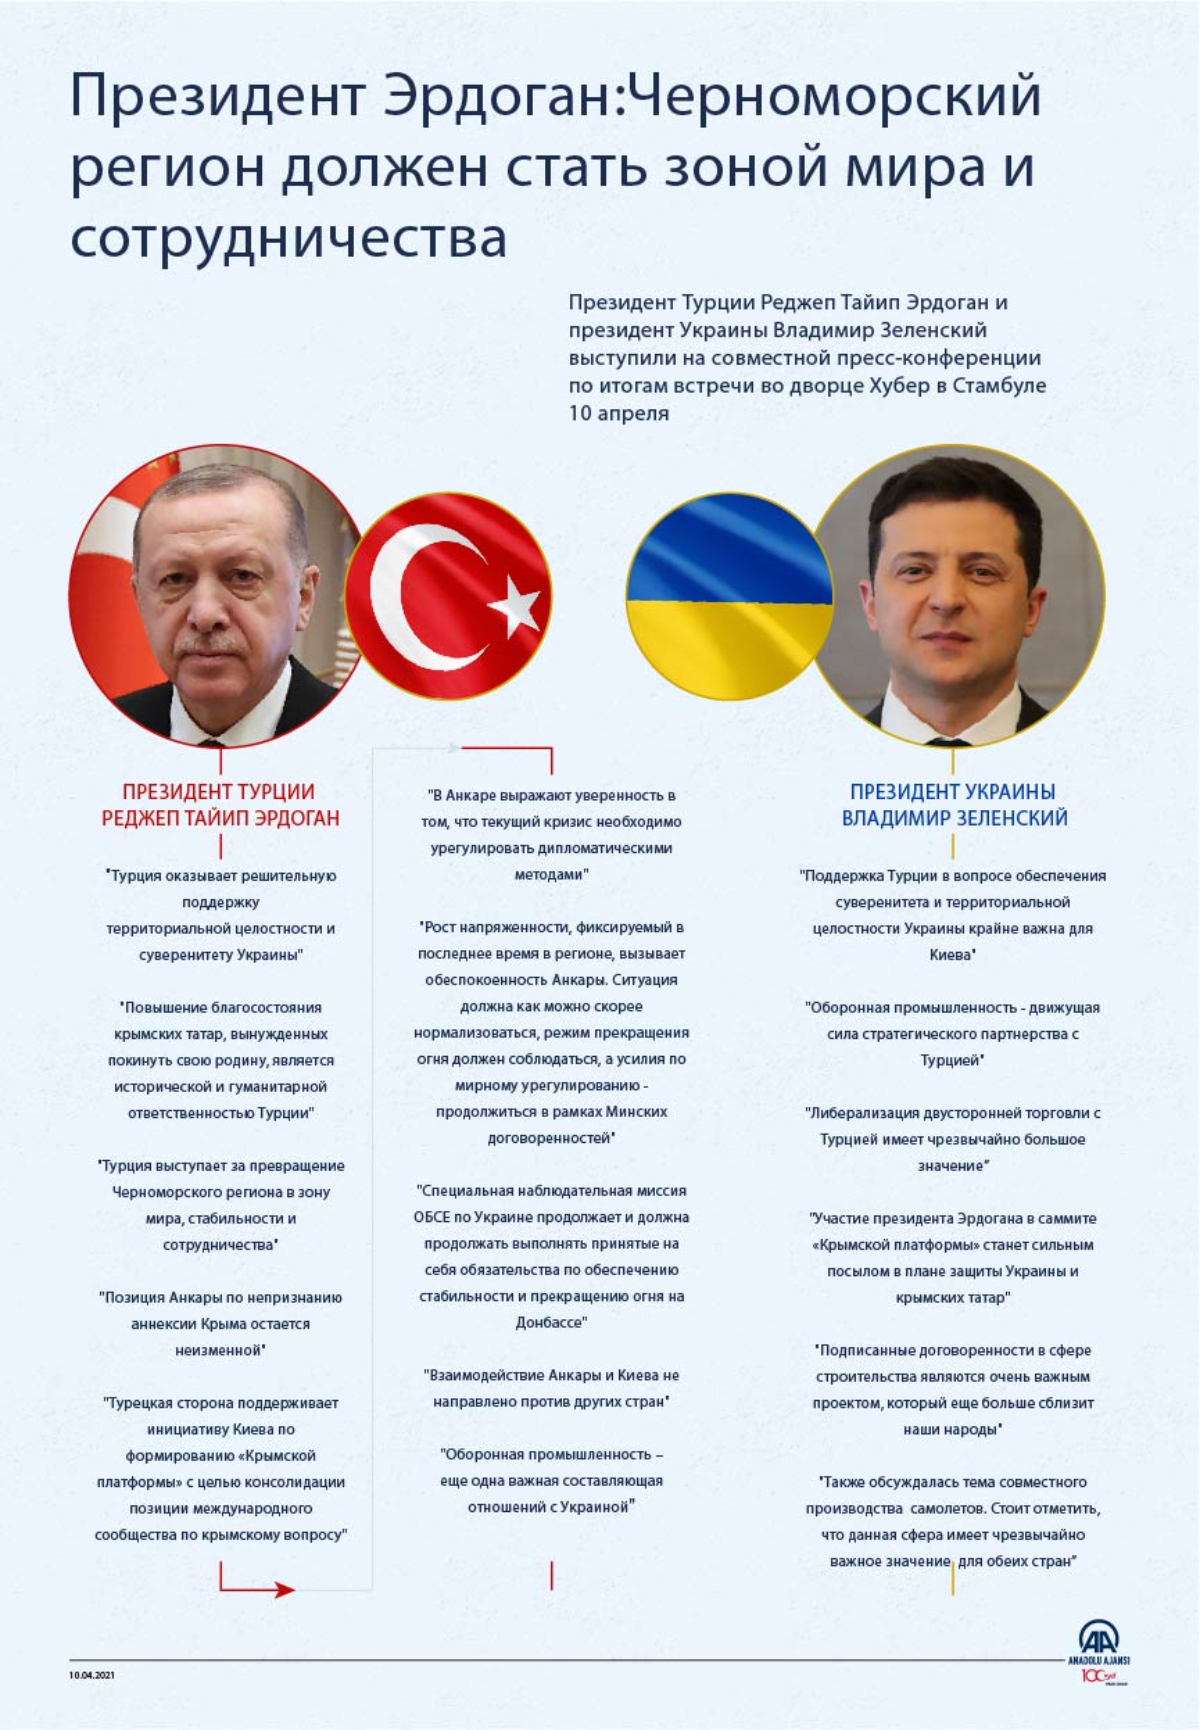 Президент Эрдоган:Черноморский регион должен стать зоной мира и сотрудничества